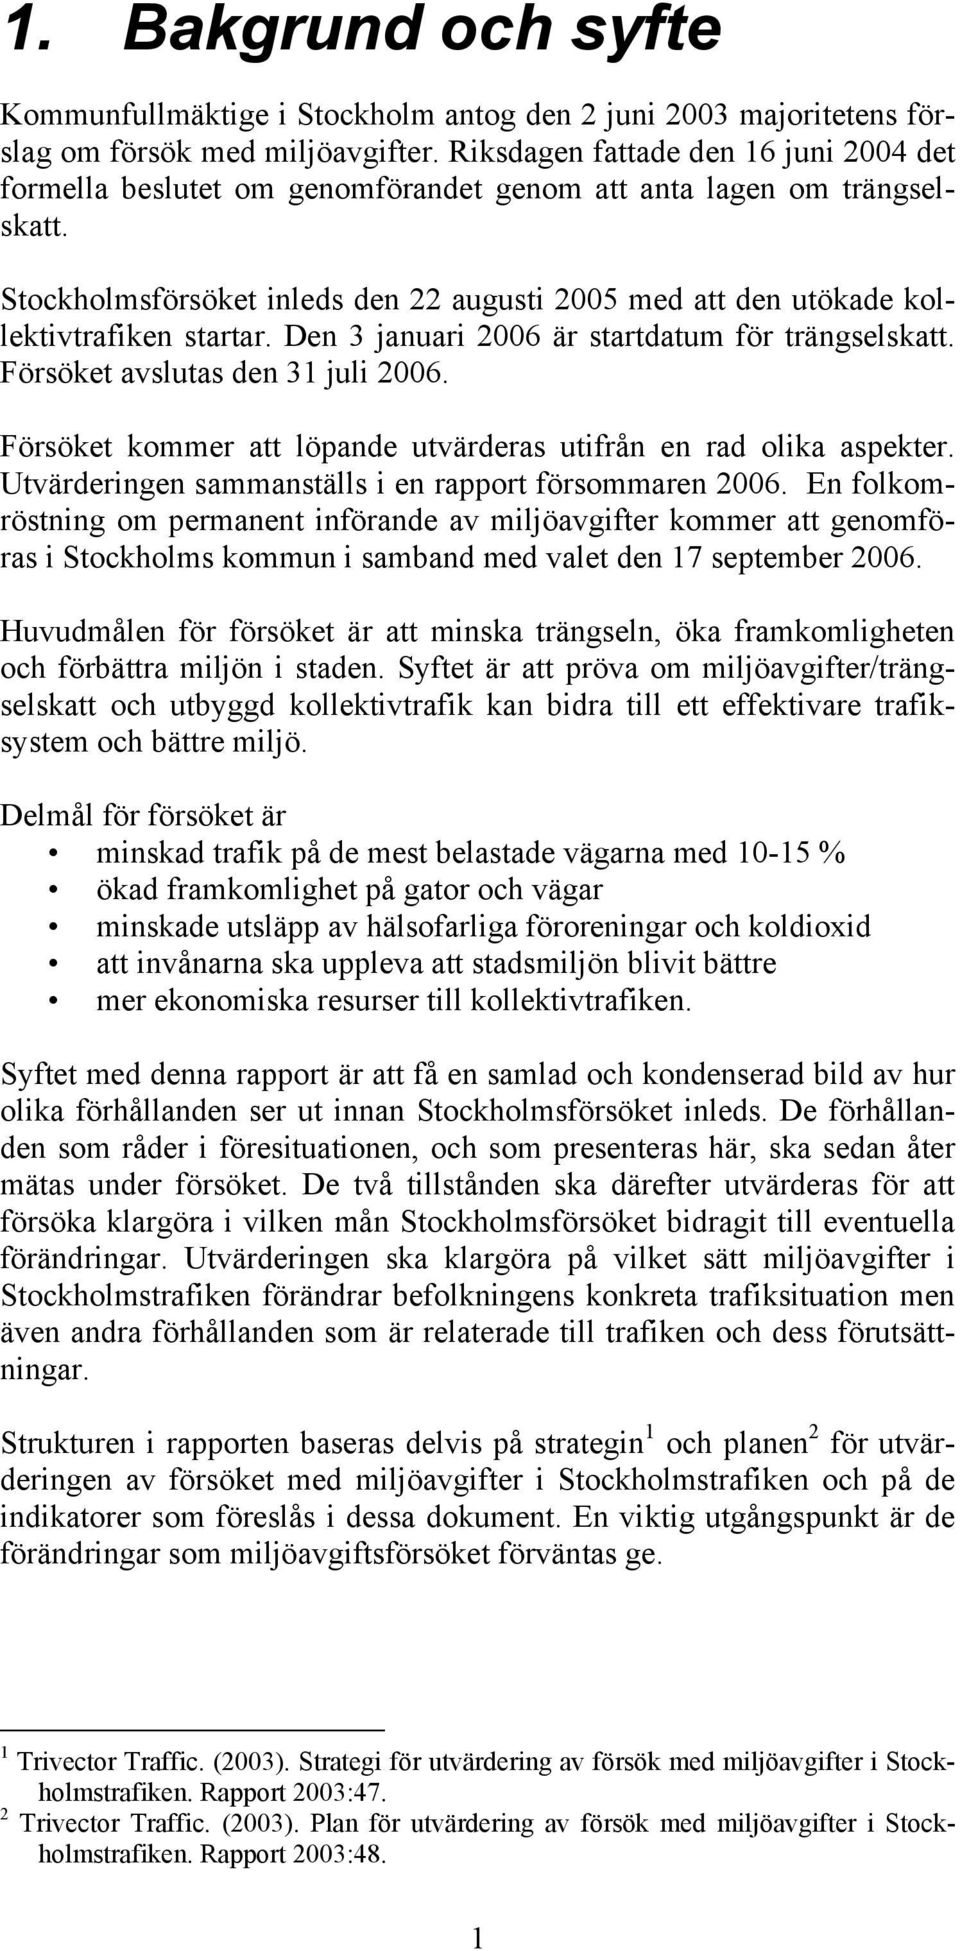 Stockholmsförsöket inleds den 22 augusti 2005 med att den utökade kollektivtrafiken startar. Den 3 januari 2006 är startdatum för trängselskatt. Försöket avslutas den 31 juli 2006.